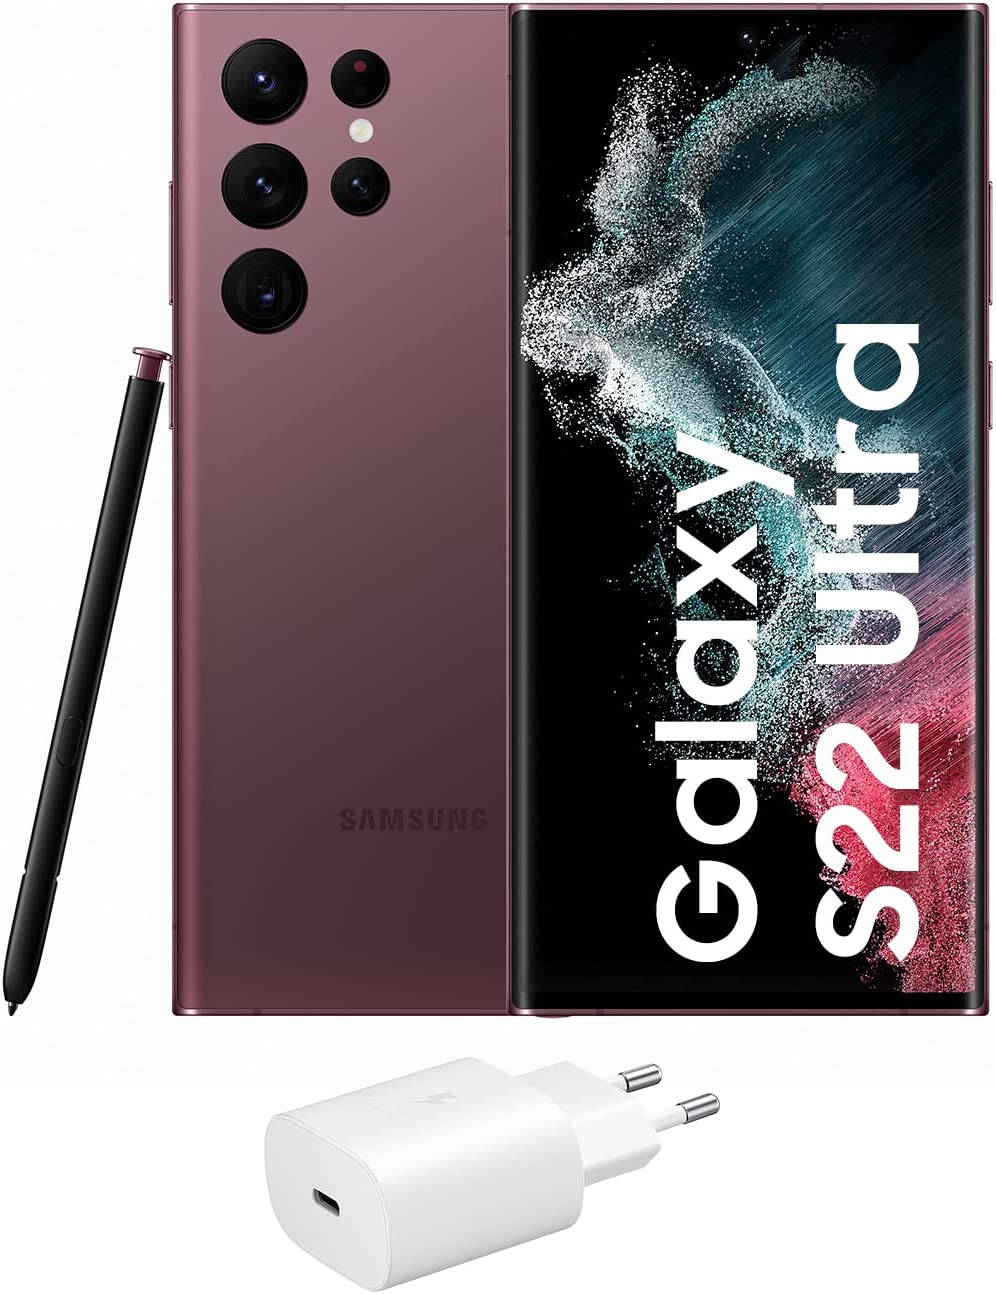 chollo Samsung Galaxy S22 Ultra 5G + Cargador – Teléfono móvil libre, 128 GB, Smartphone Android, Burdeos (Versión Española)